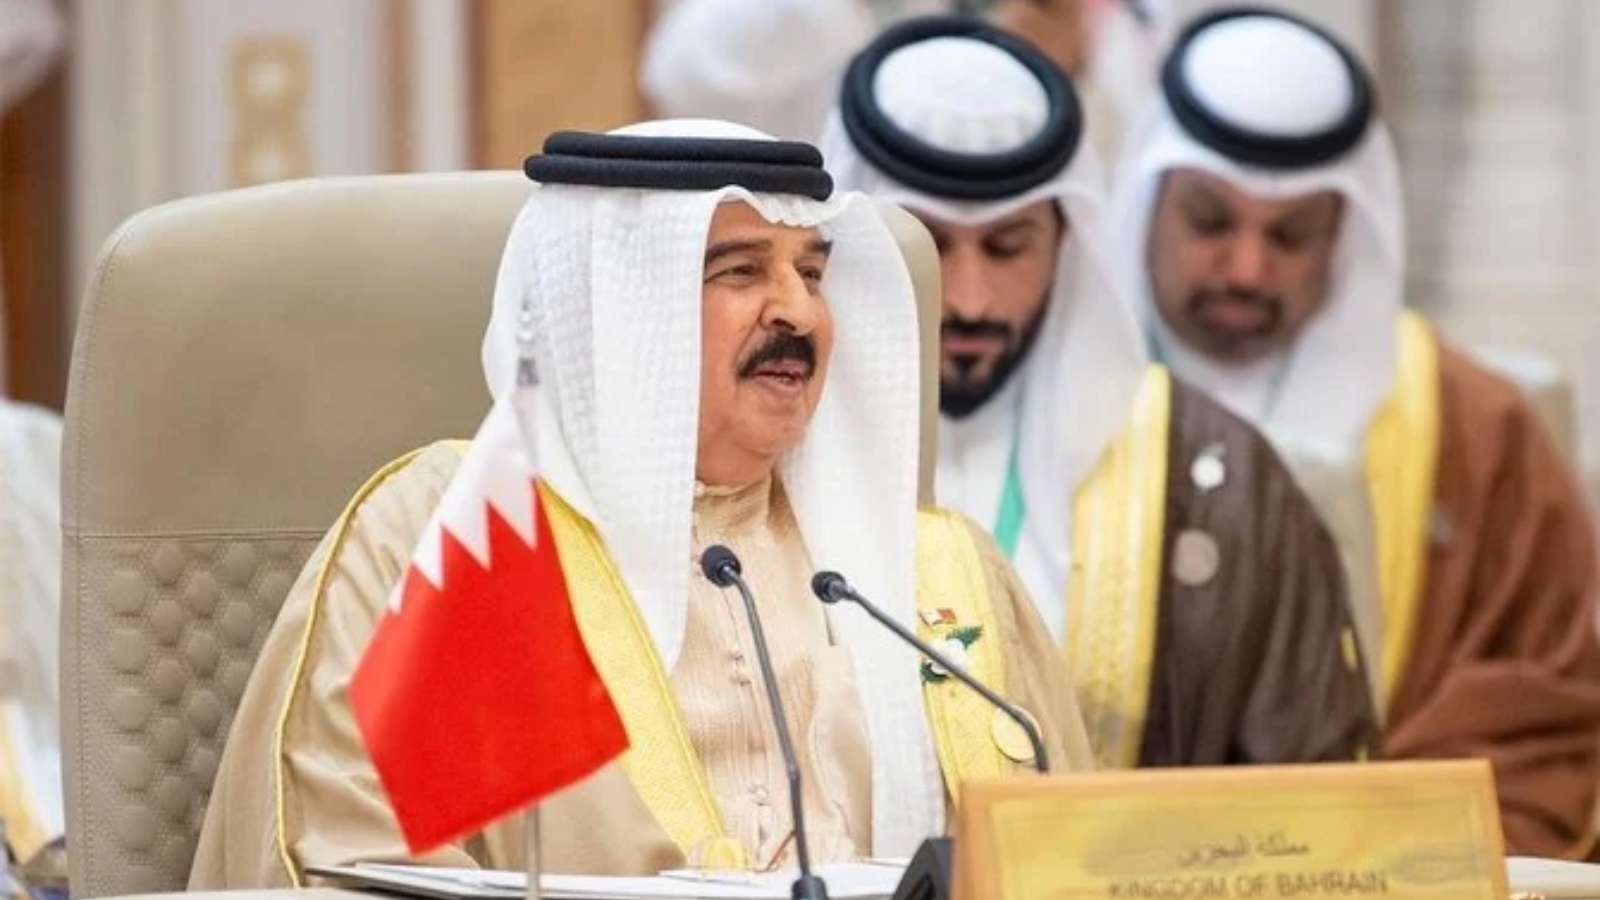 ملك البحرين الملك حمد بن عيسى آل خليفة